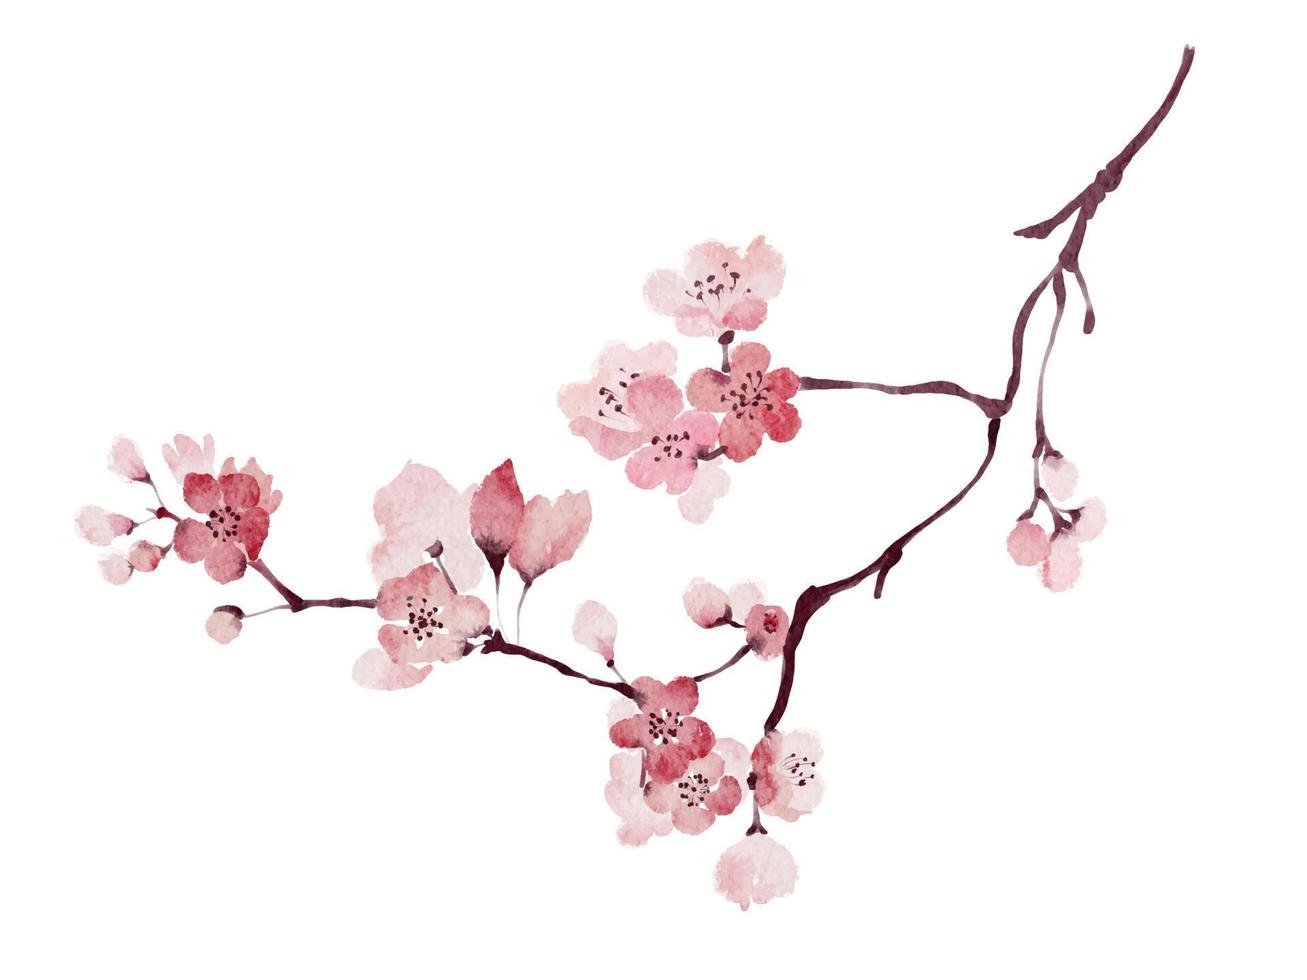 aquarelle fleur de cerisier sakura branche peinture auto trace isolé sur fond blanc vecteur